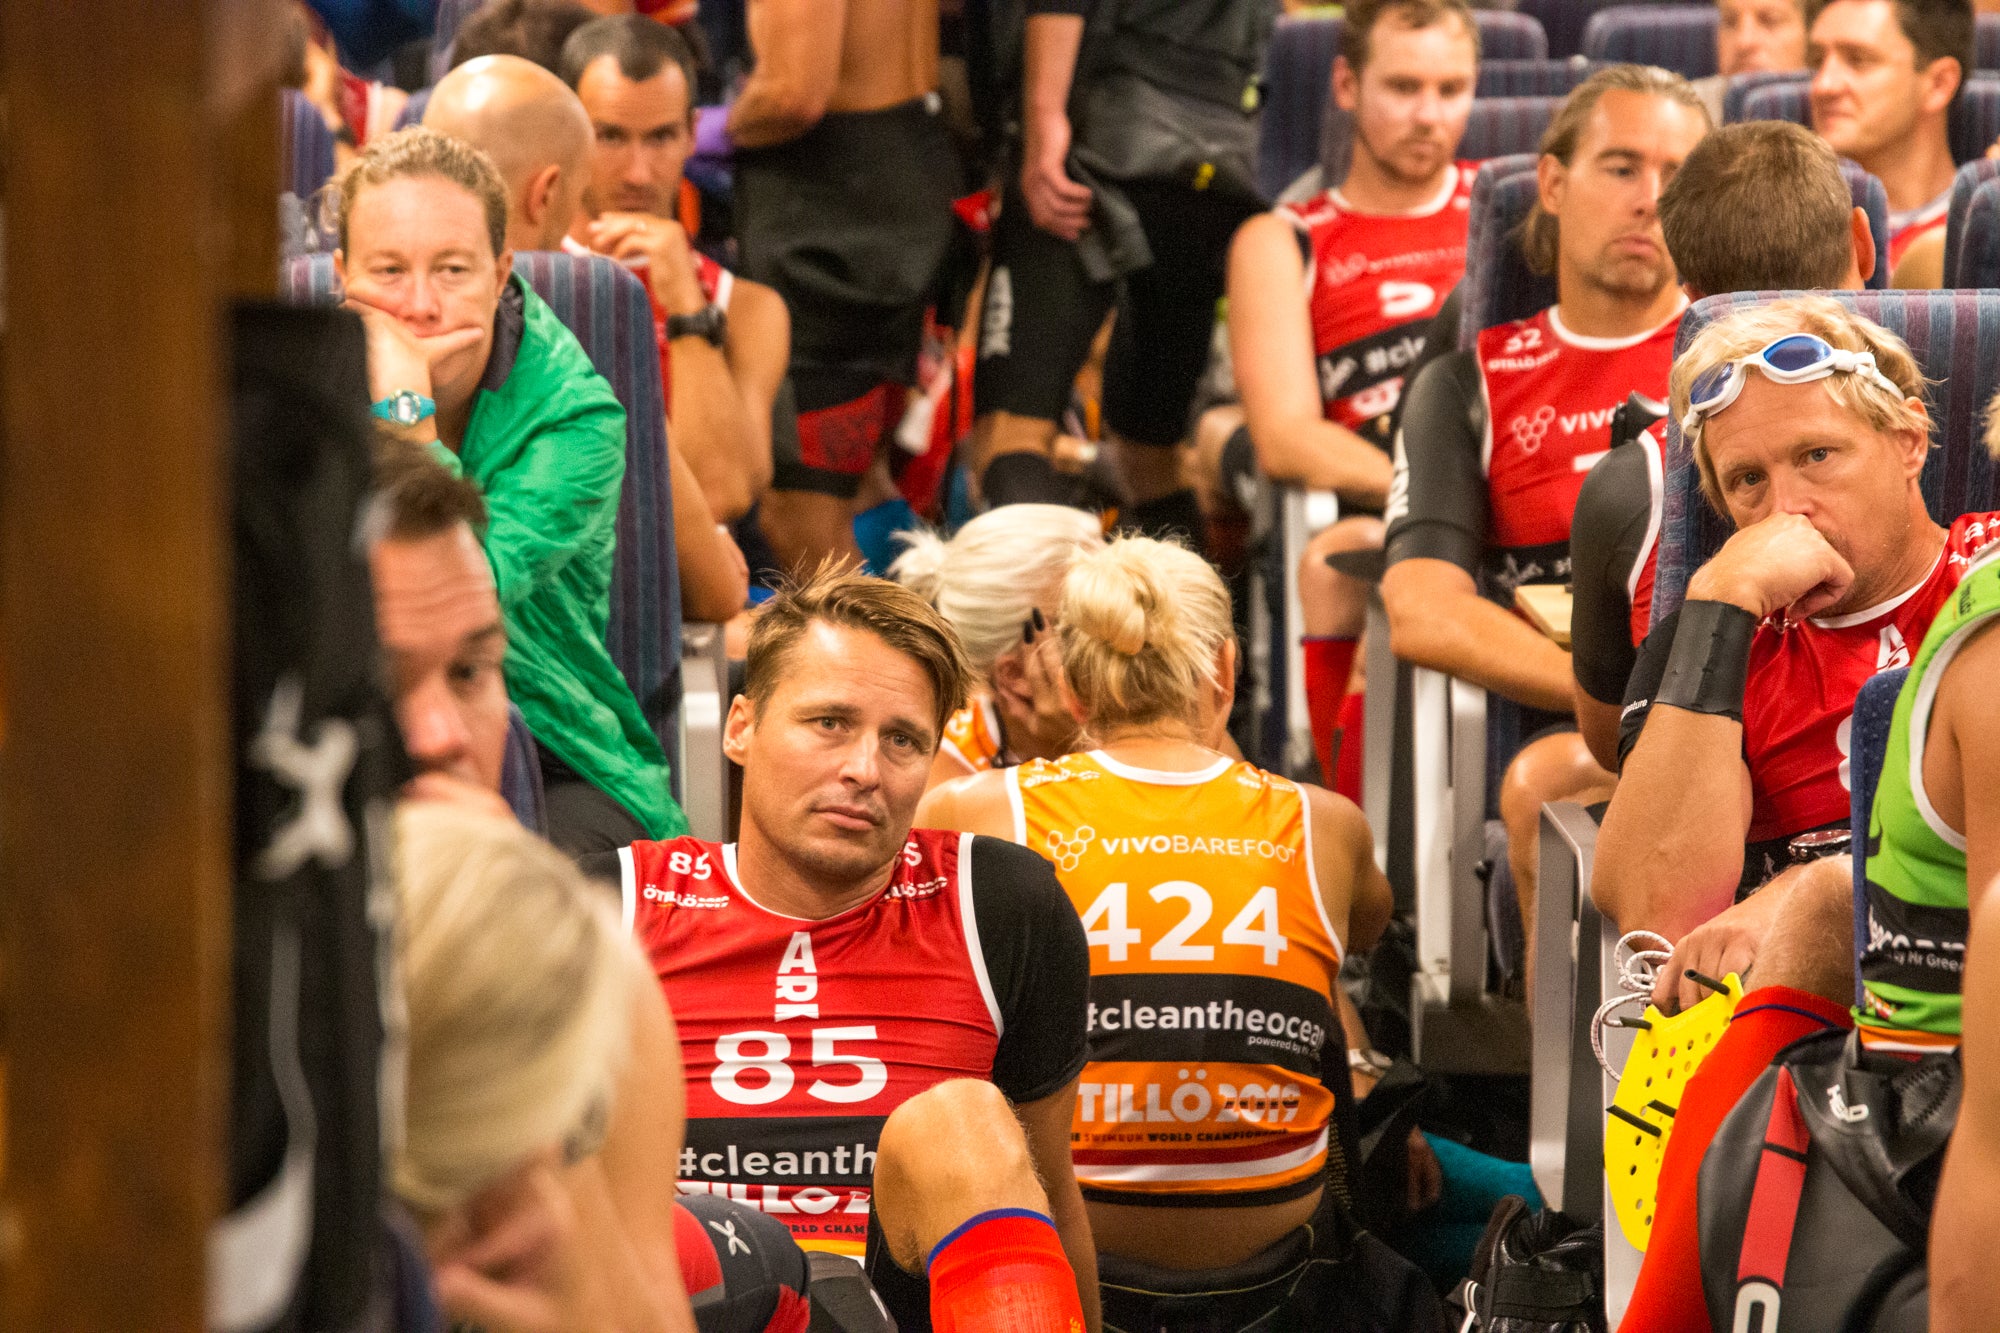 Nervous racers on the ferry - ÖTILLÖ Swimrun World Championship 2019